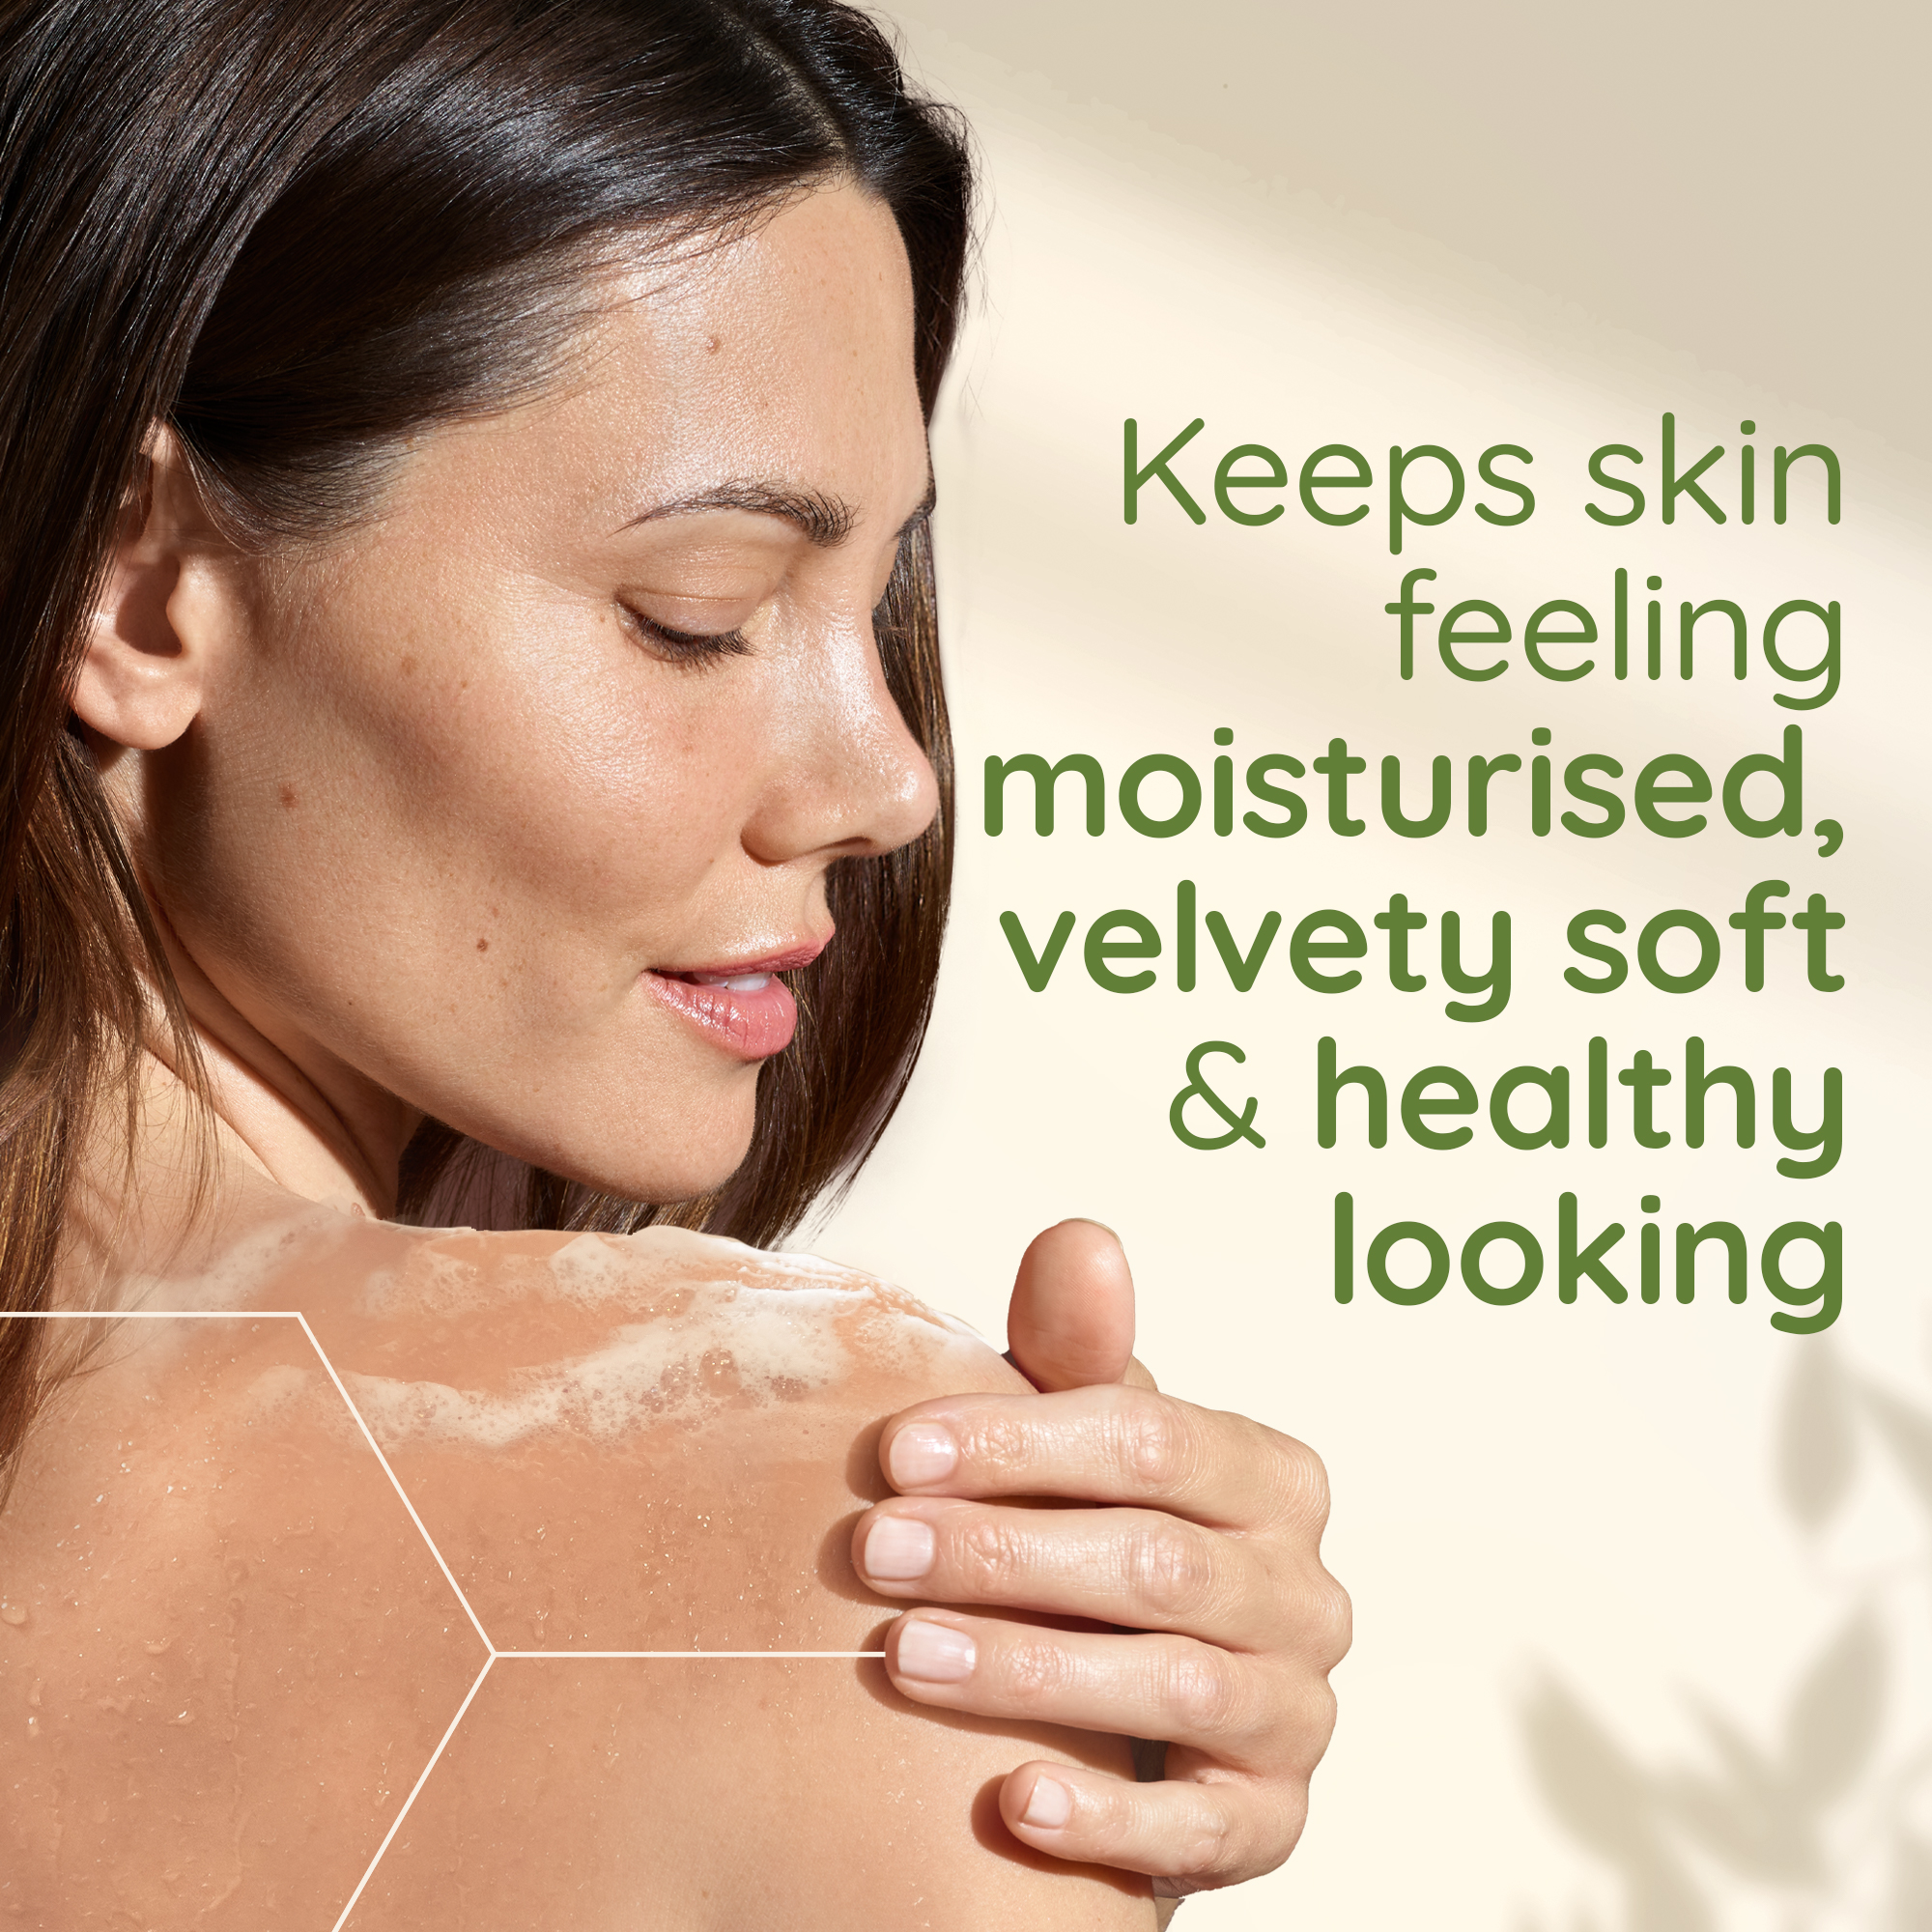 keeps skin feeling moisturised, velvety sof and healthy-looking